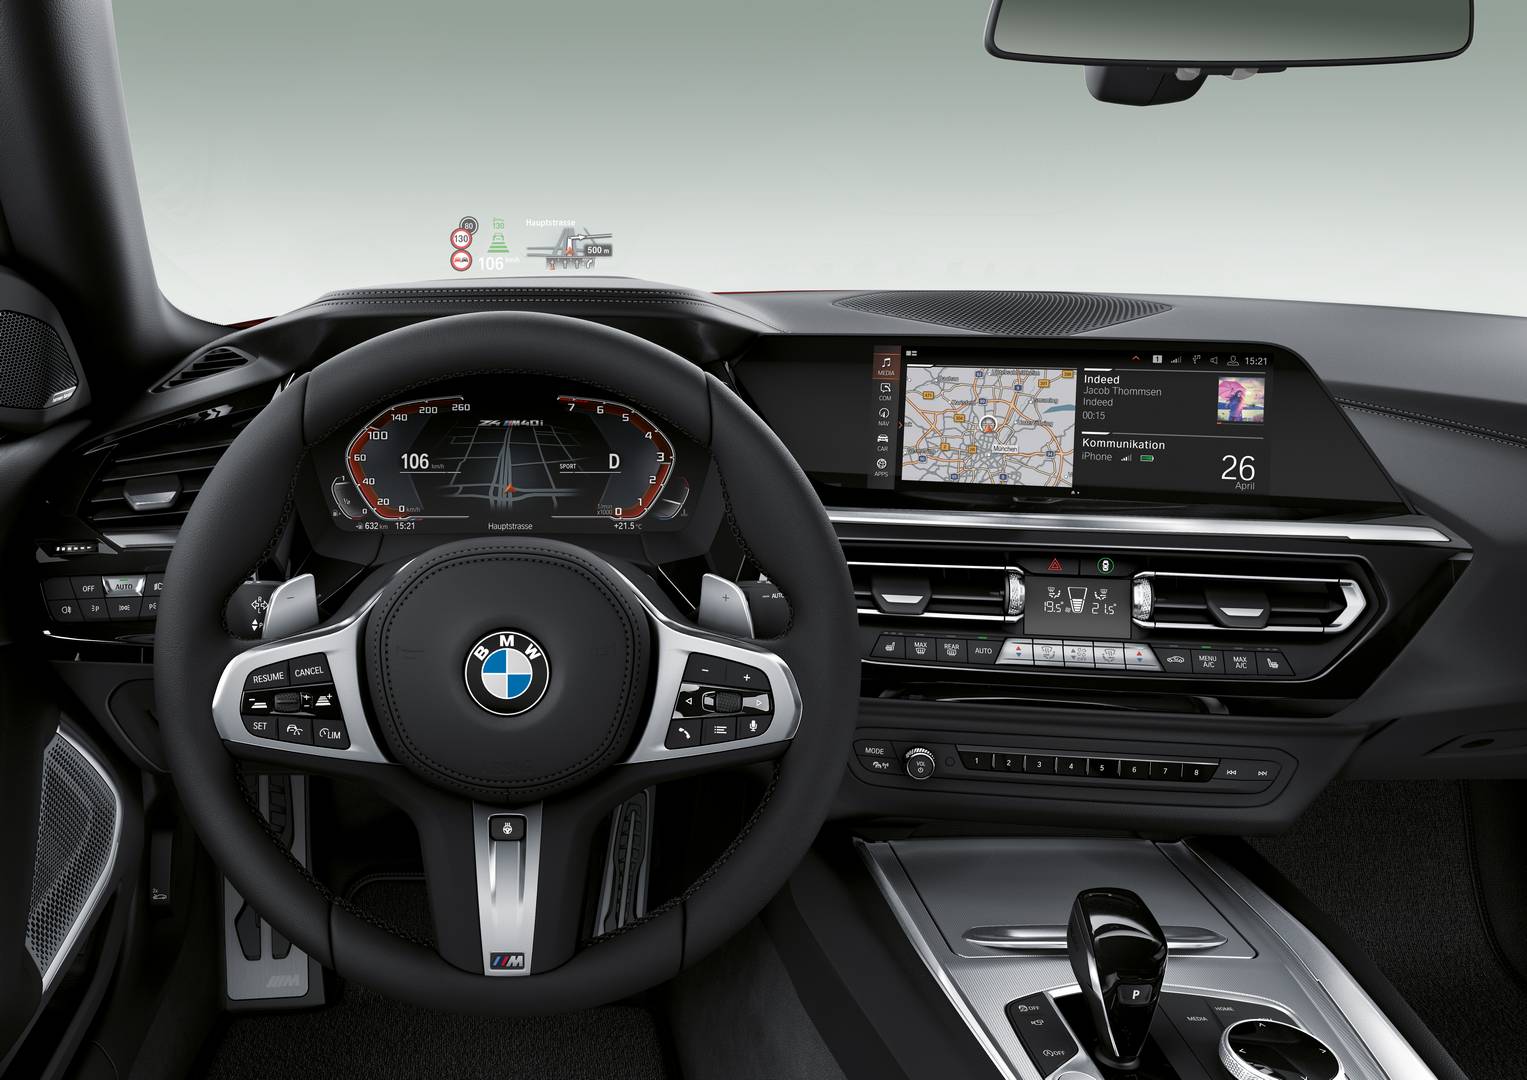 Мировая премьера BMW Z4 M40i First Edition проходит в Пеббл-Бич, однако полная информация о диапазоне Z4 будет представлена на Парижском автосалоне 2018, который состоится в следующем месяце.